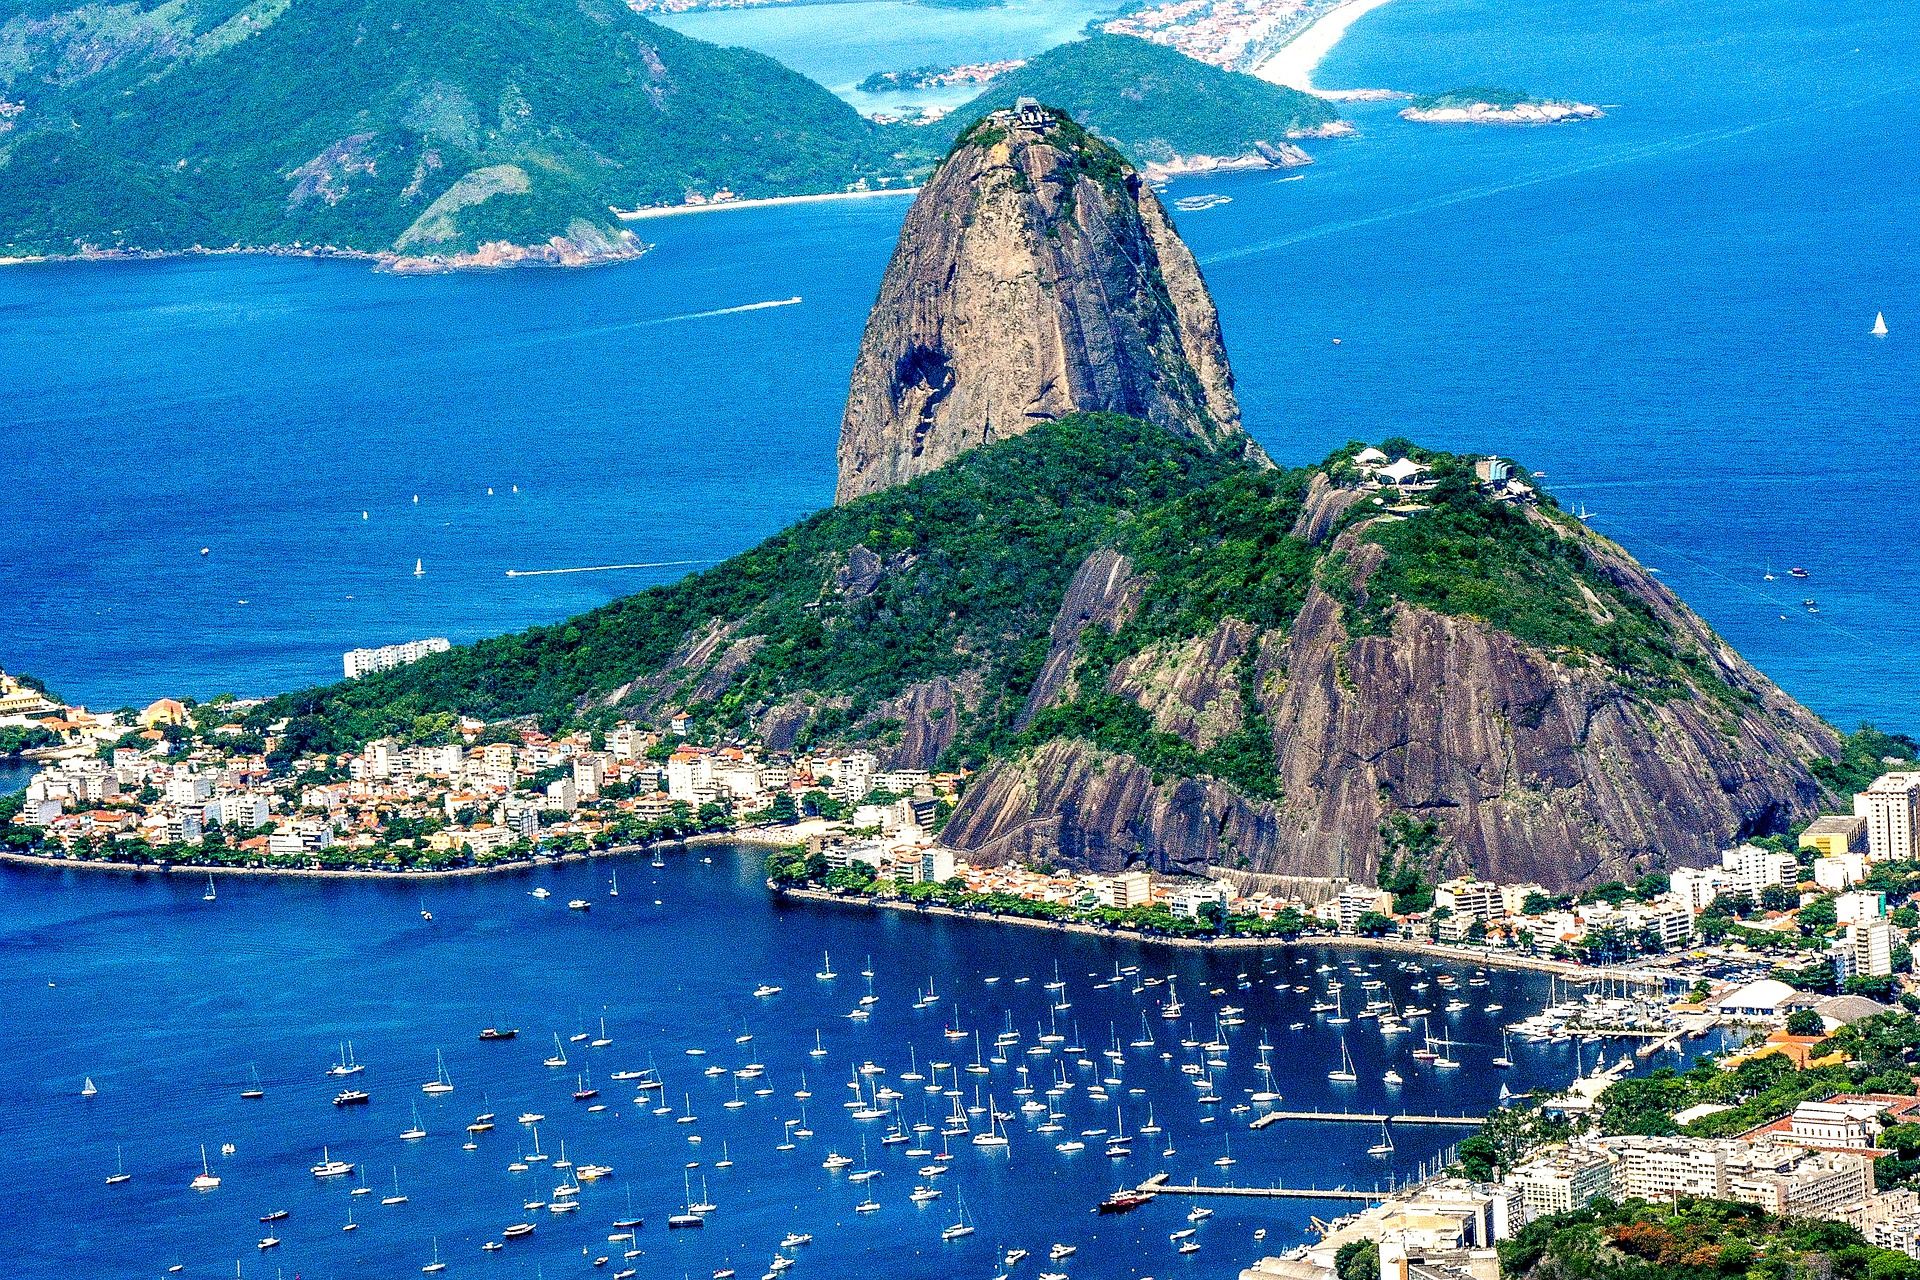 Sugar loaf mountain in Rio de Janeiro Brazil